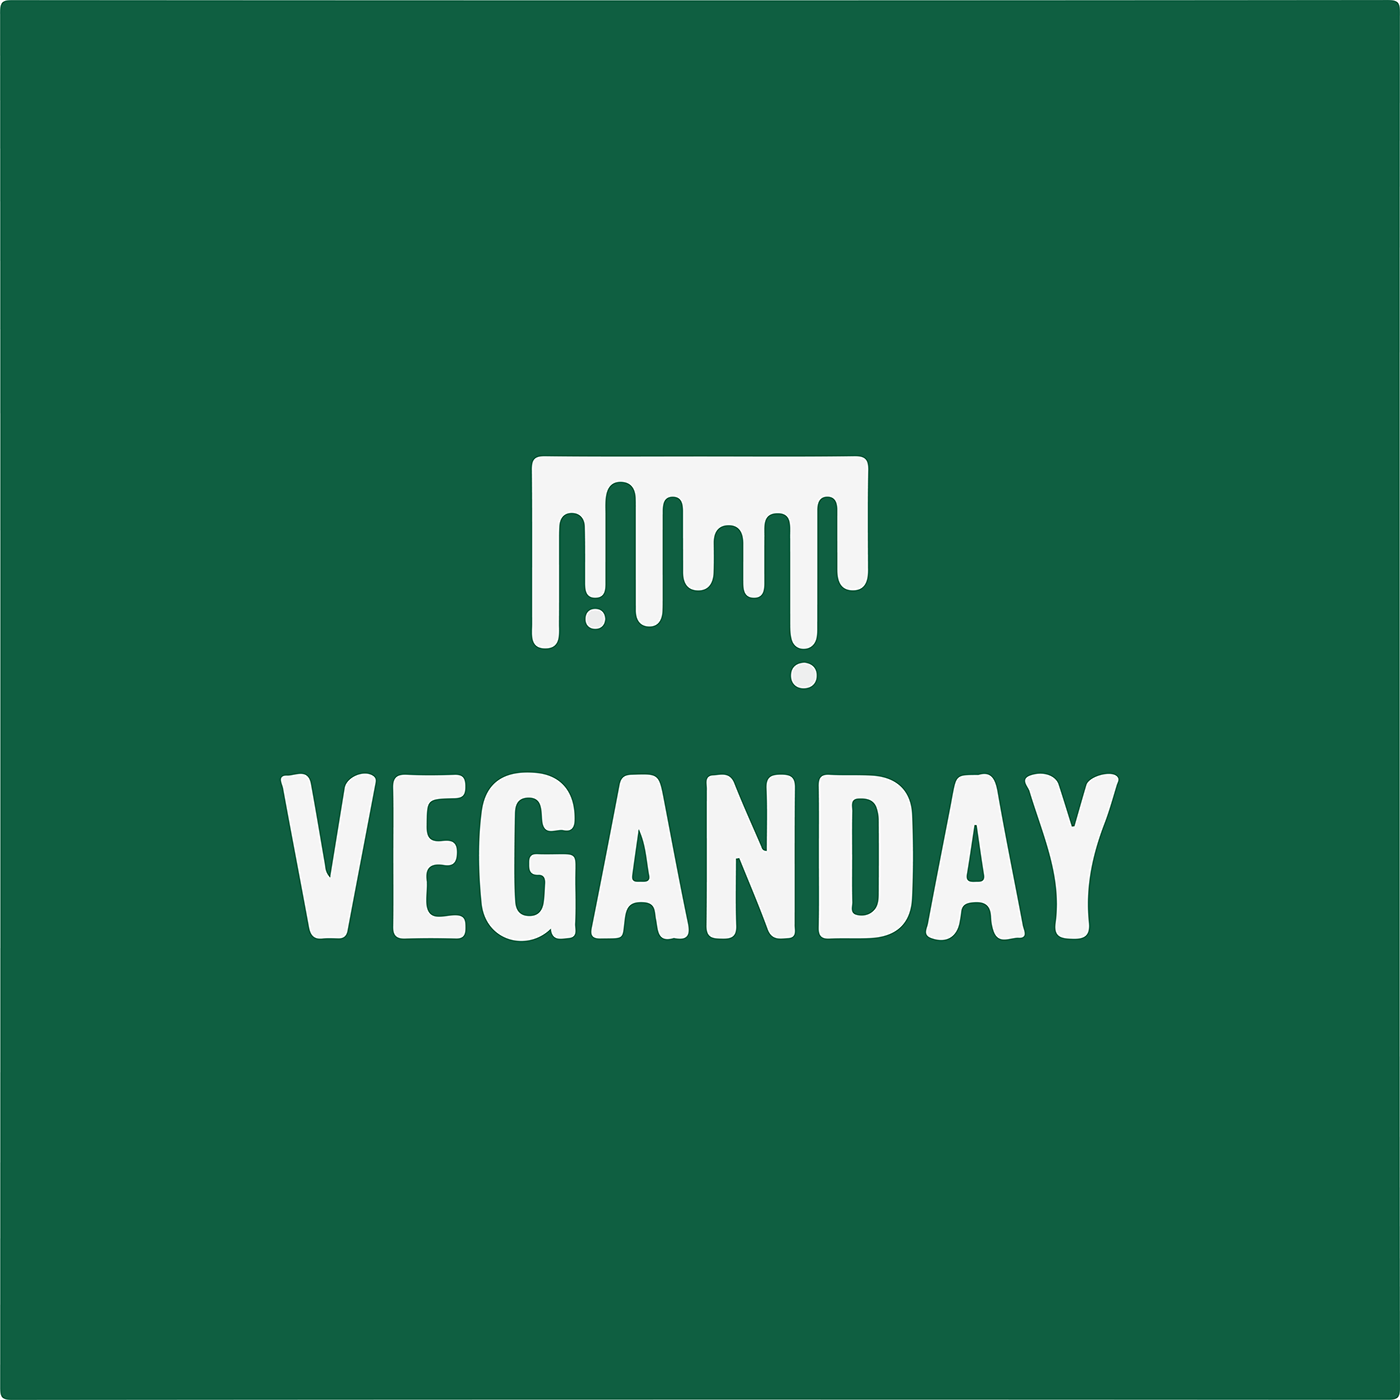 MOHSIN FIAZ designed VeganDay Cafe